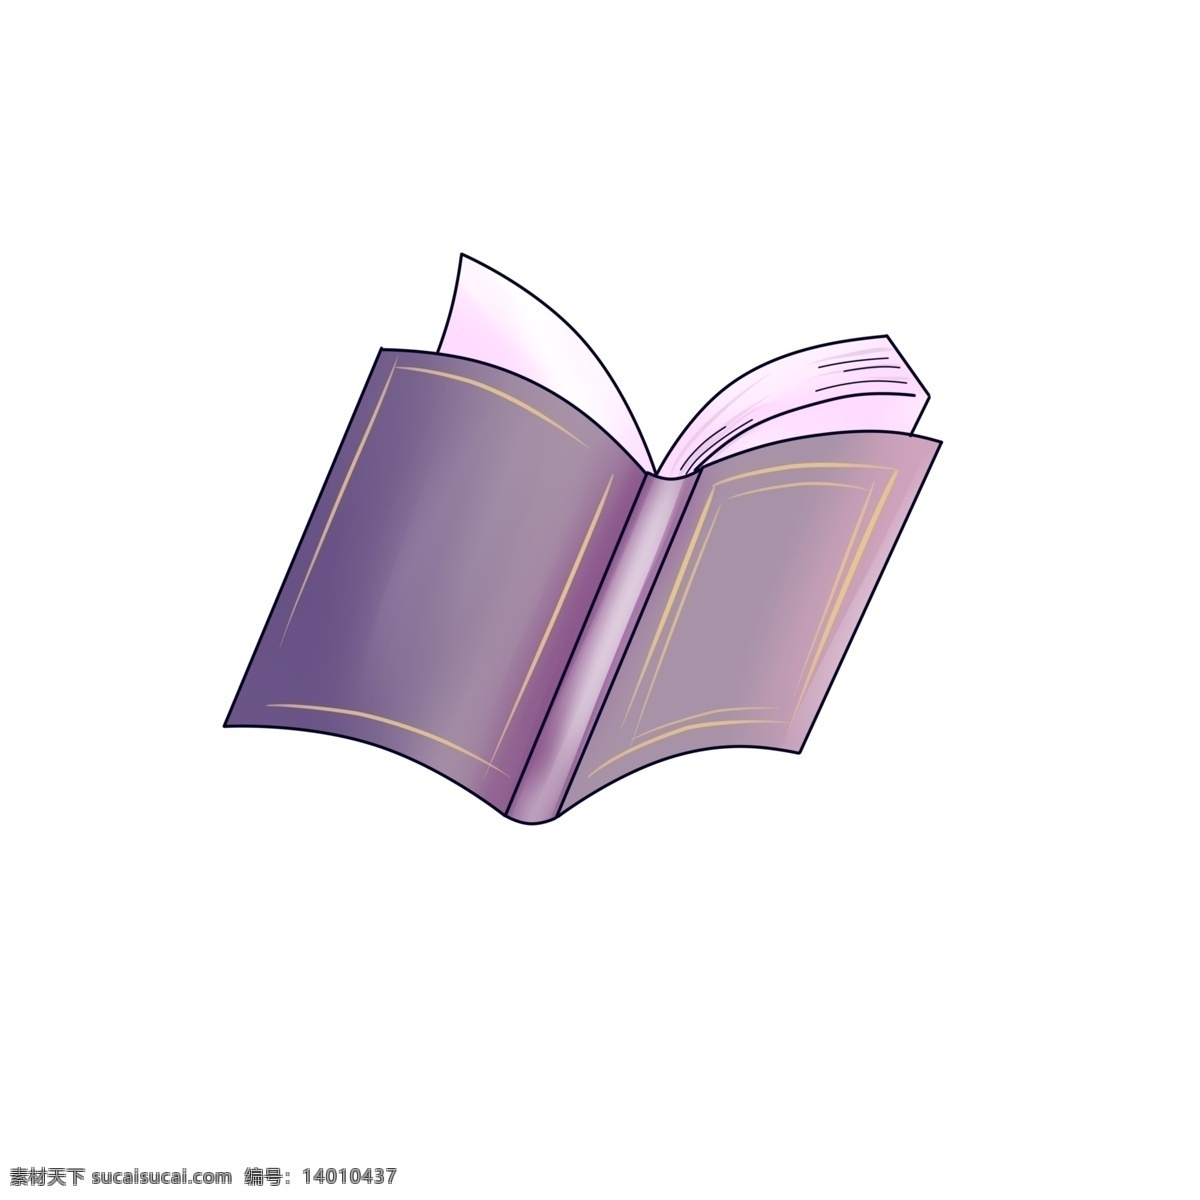 打开 书籍 卡通 插画 打开的书籍 书本 紫色书籍 卡通书籍插画 紫色书本 创意书籍插画 书籍插画